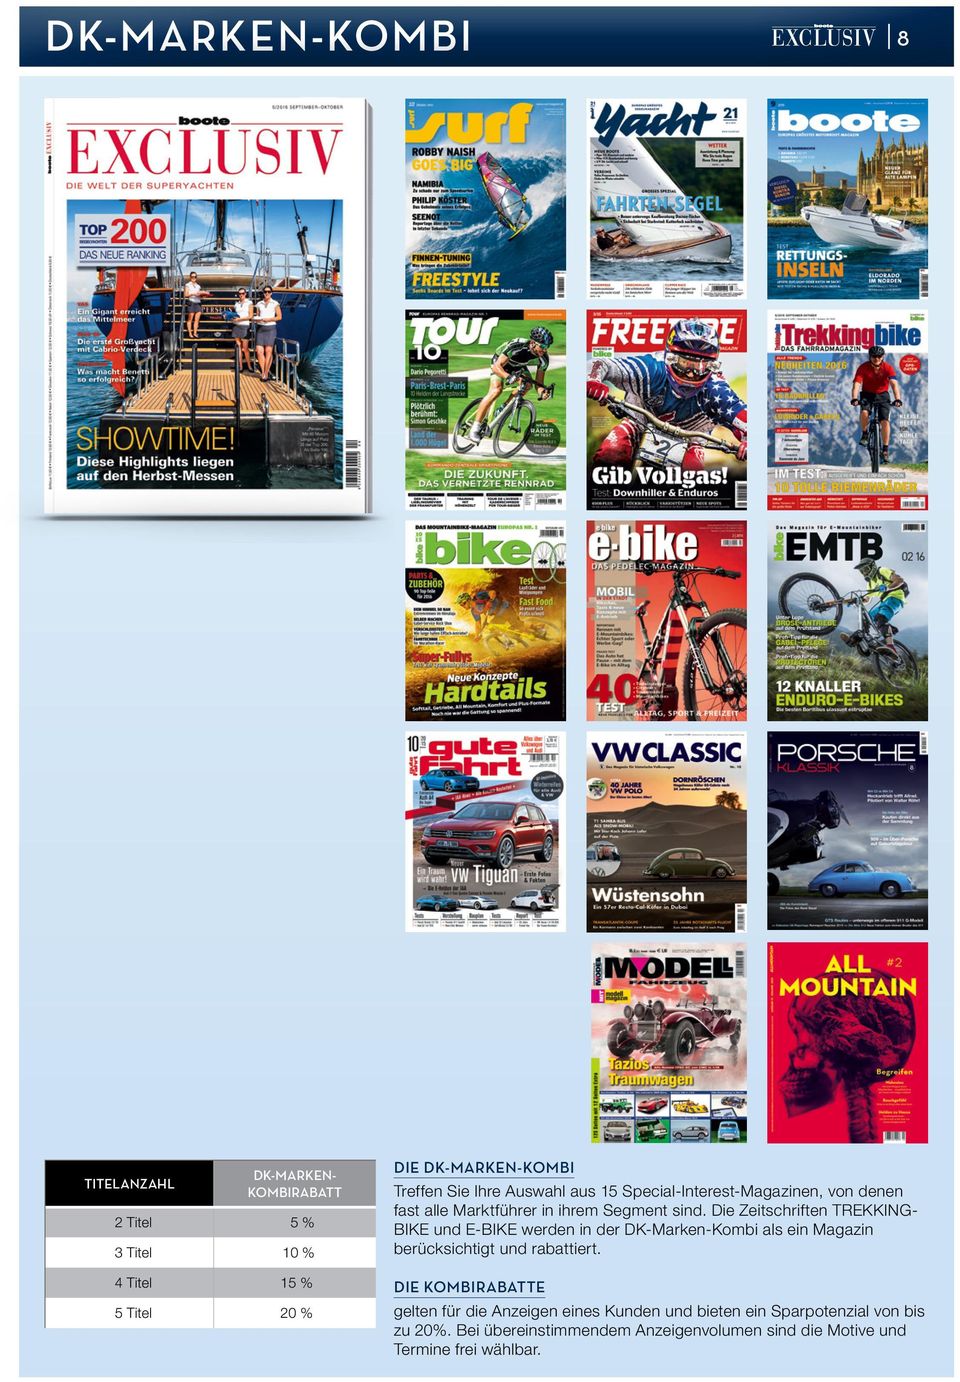 Die Zeitschriften TREKKINGBIKE und E-BIKE werden in der DK-Marken-Kombi als ein Magazin berücksichtigt und rabattiert.